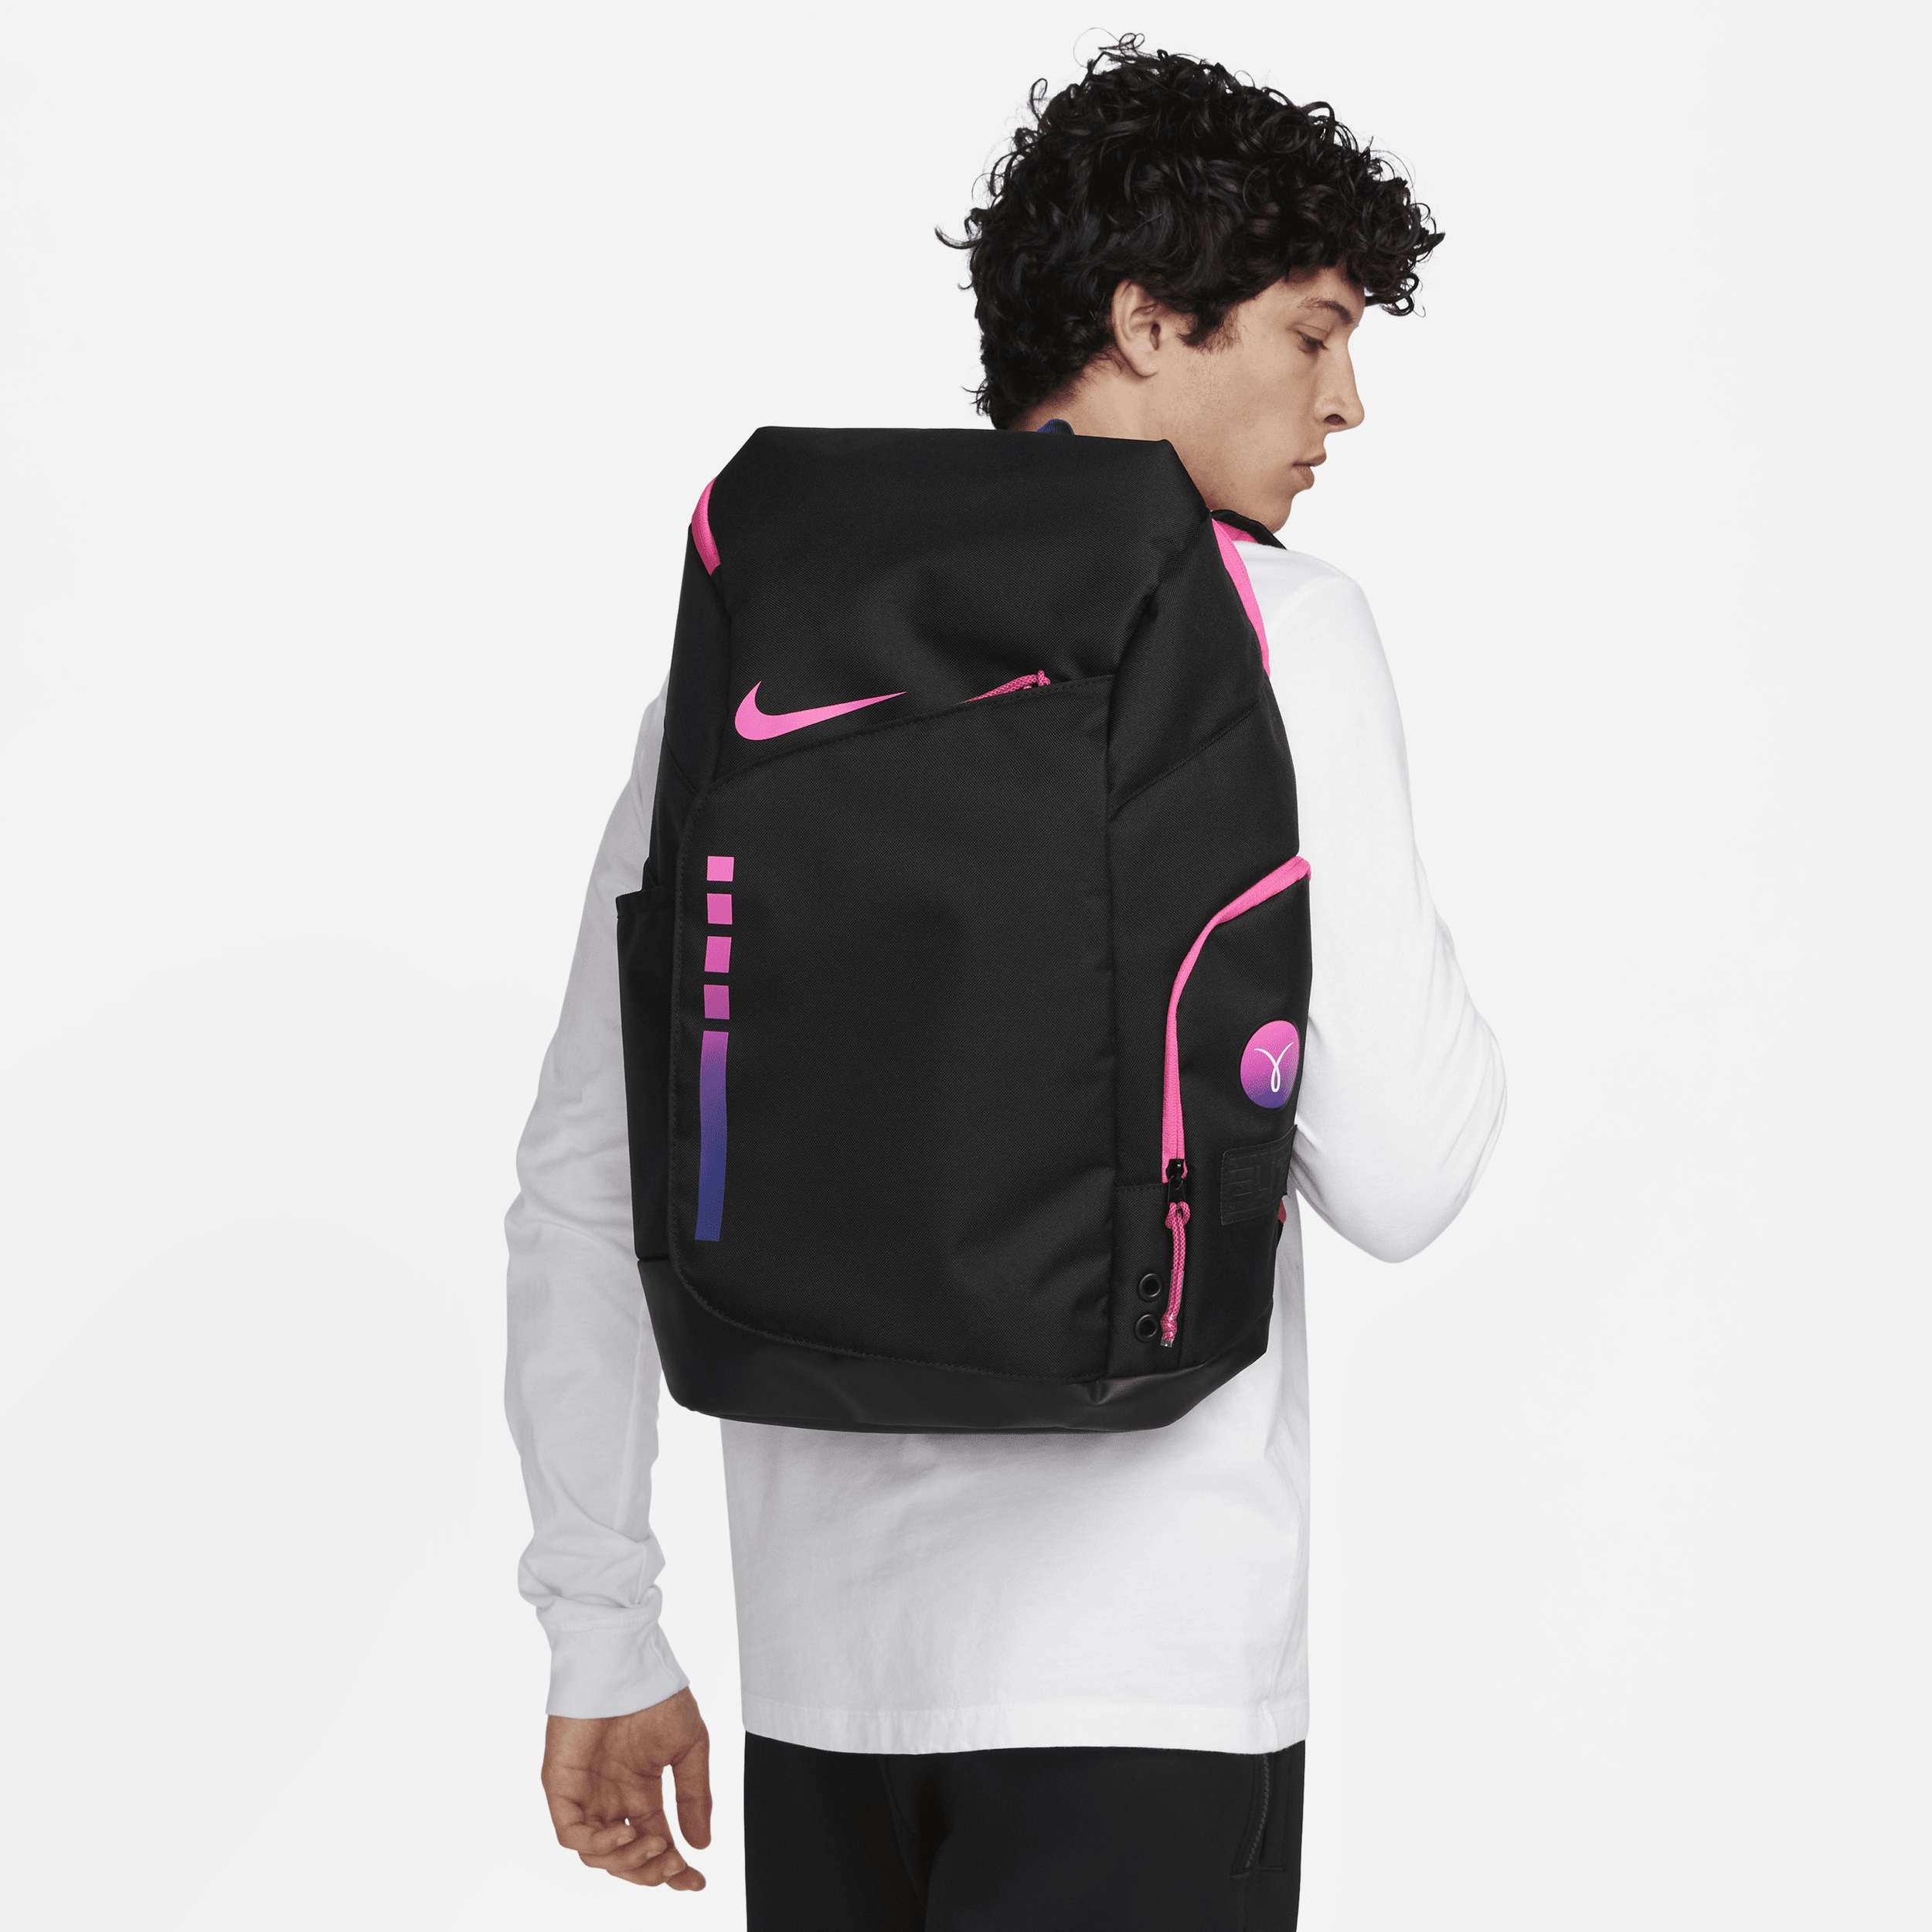 Nike Unisex Hoops Elite Backpack (32l) In Black